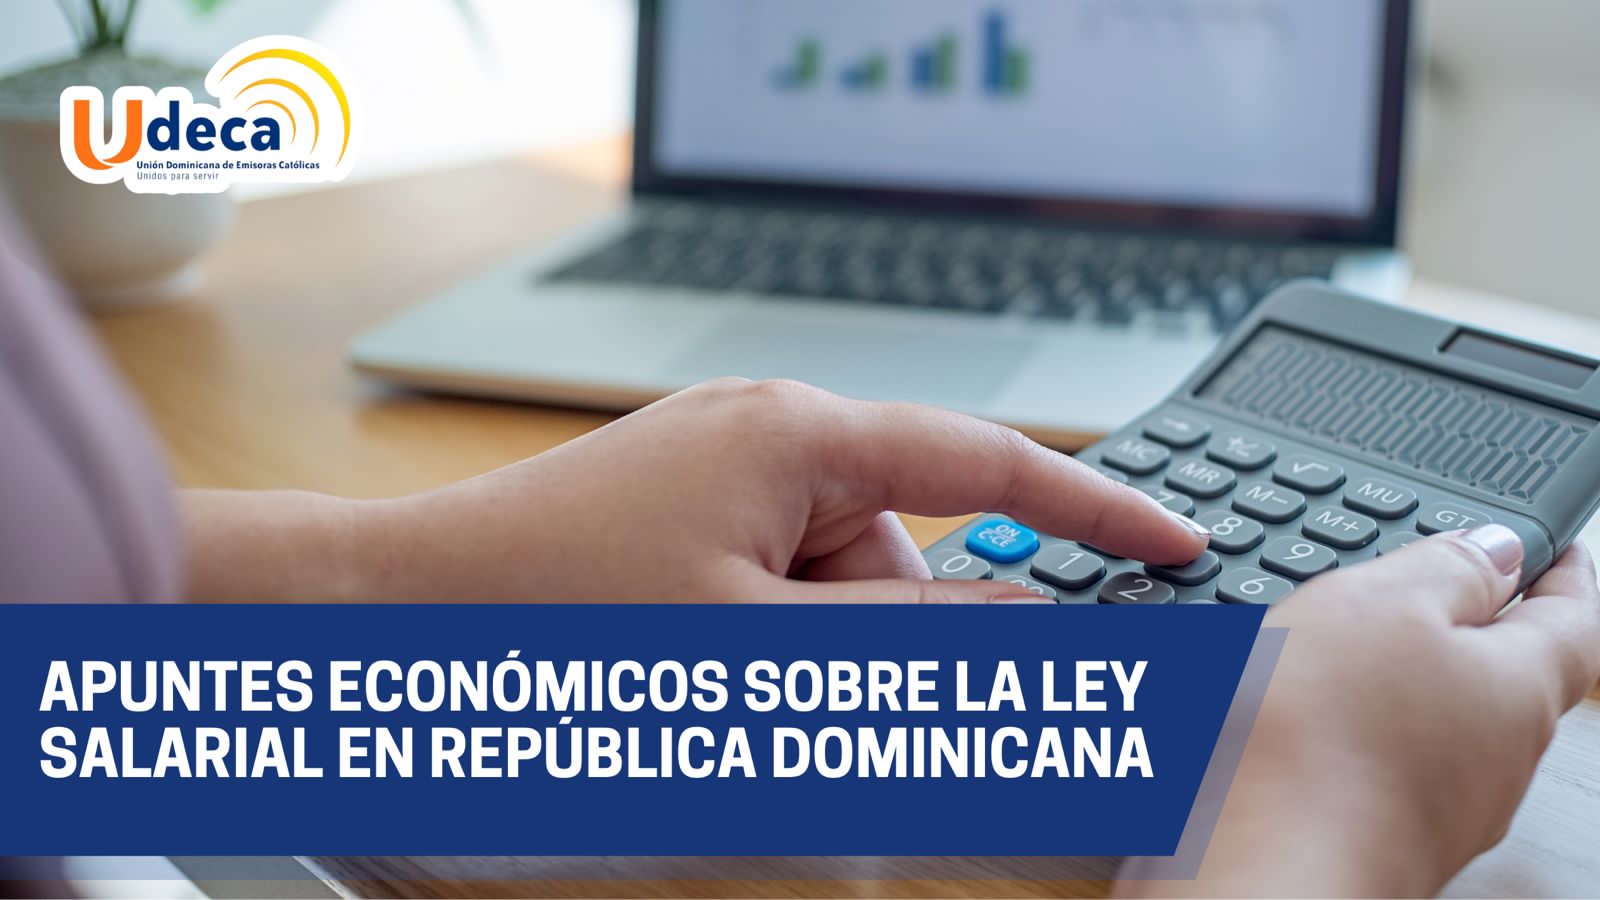 Apuntes económicos sobre la Ley salarial en República Dominicana